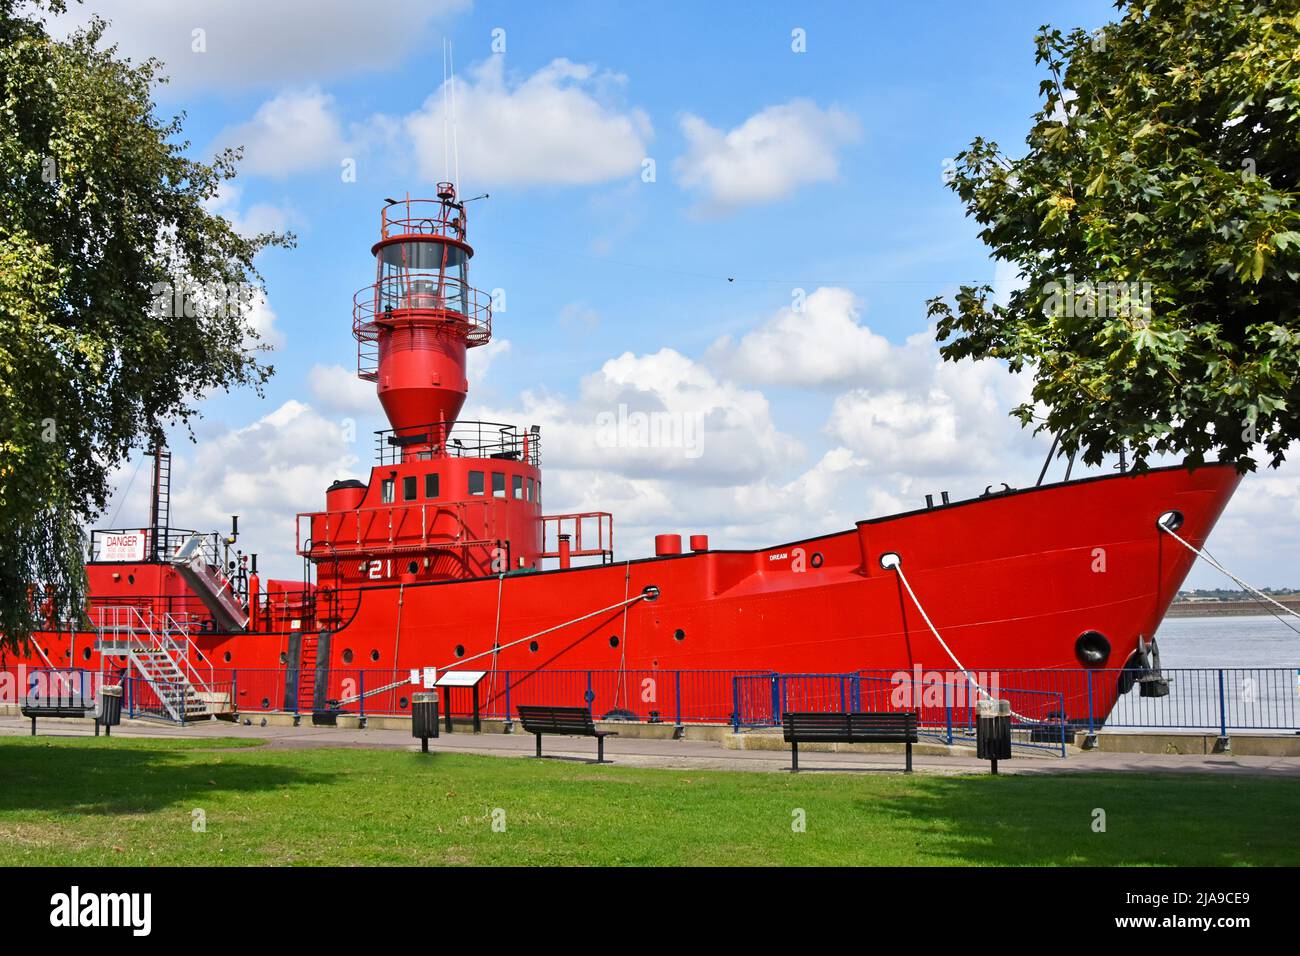 Historical Light Vessel LV21 ein 40 Meter langes rotes Leuchtschiff mit Stahlrumpf, das als schwimmender Kunstraum angepasst wurde und an der Themse in Gravesend, Kent, England, festgemacht ist Stockfoto